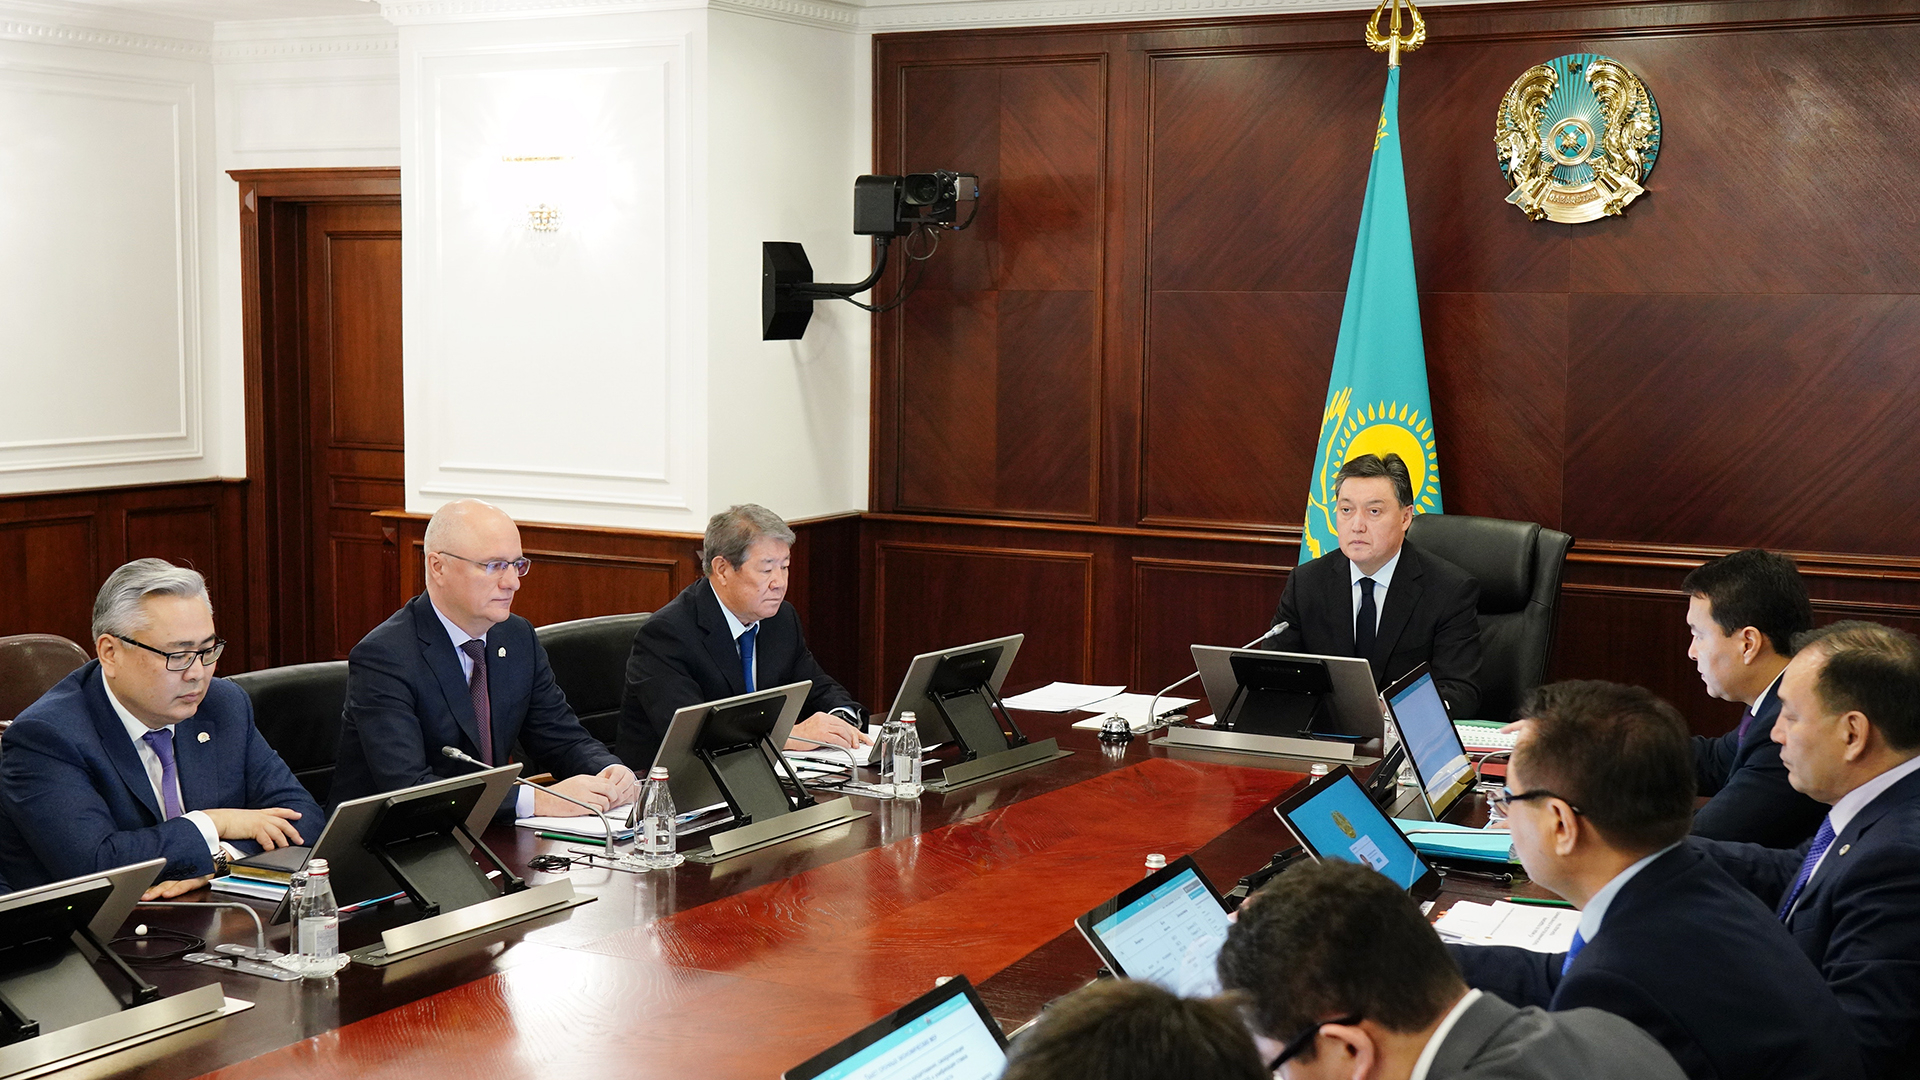 Preparations for spring field work reviewed in Kazakhstan